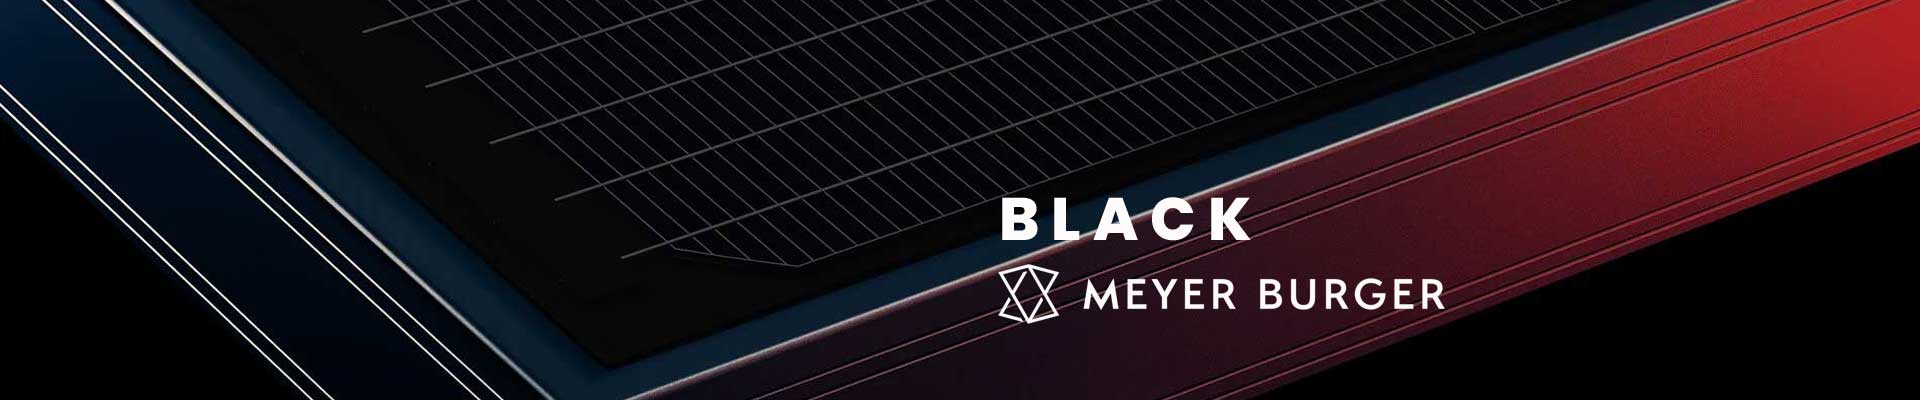 Meyer-Burger-Black-Solar-PV-Panels-Header-Image1